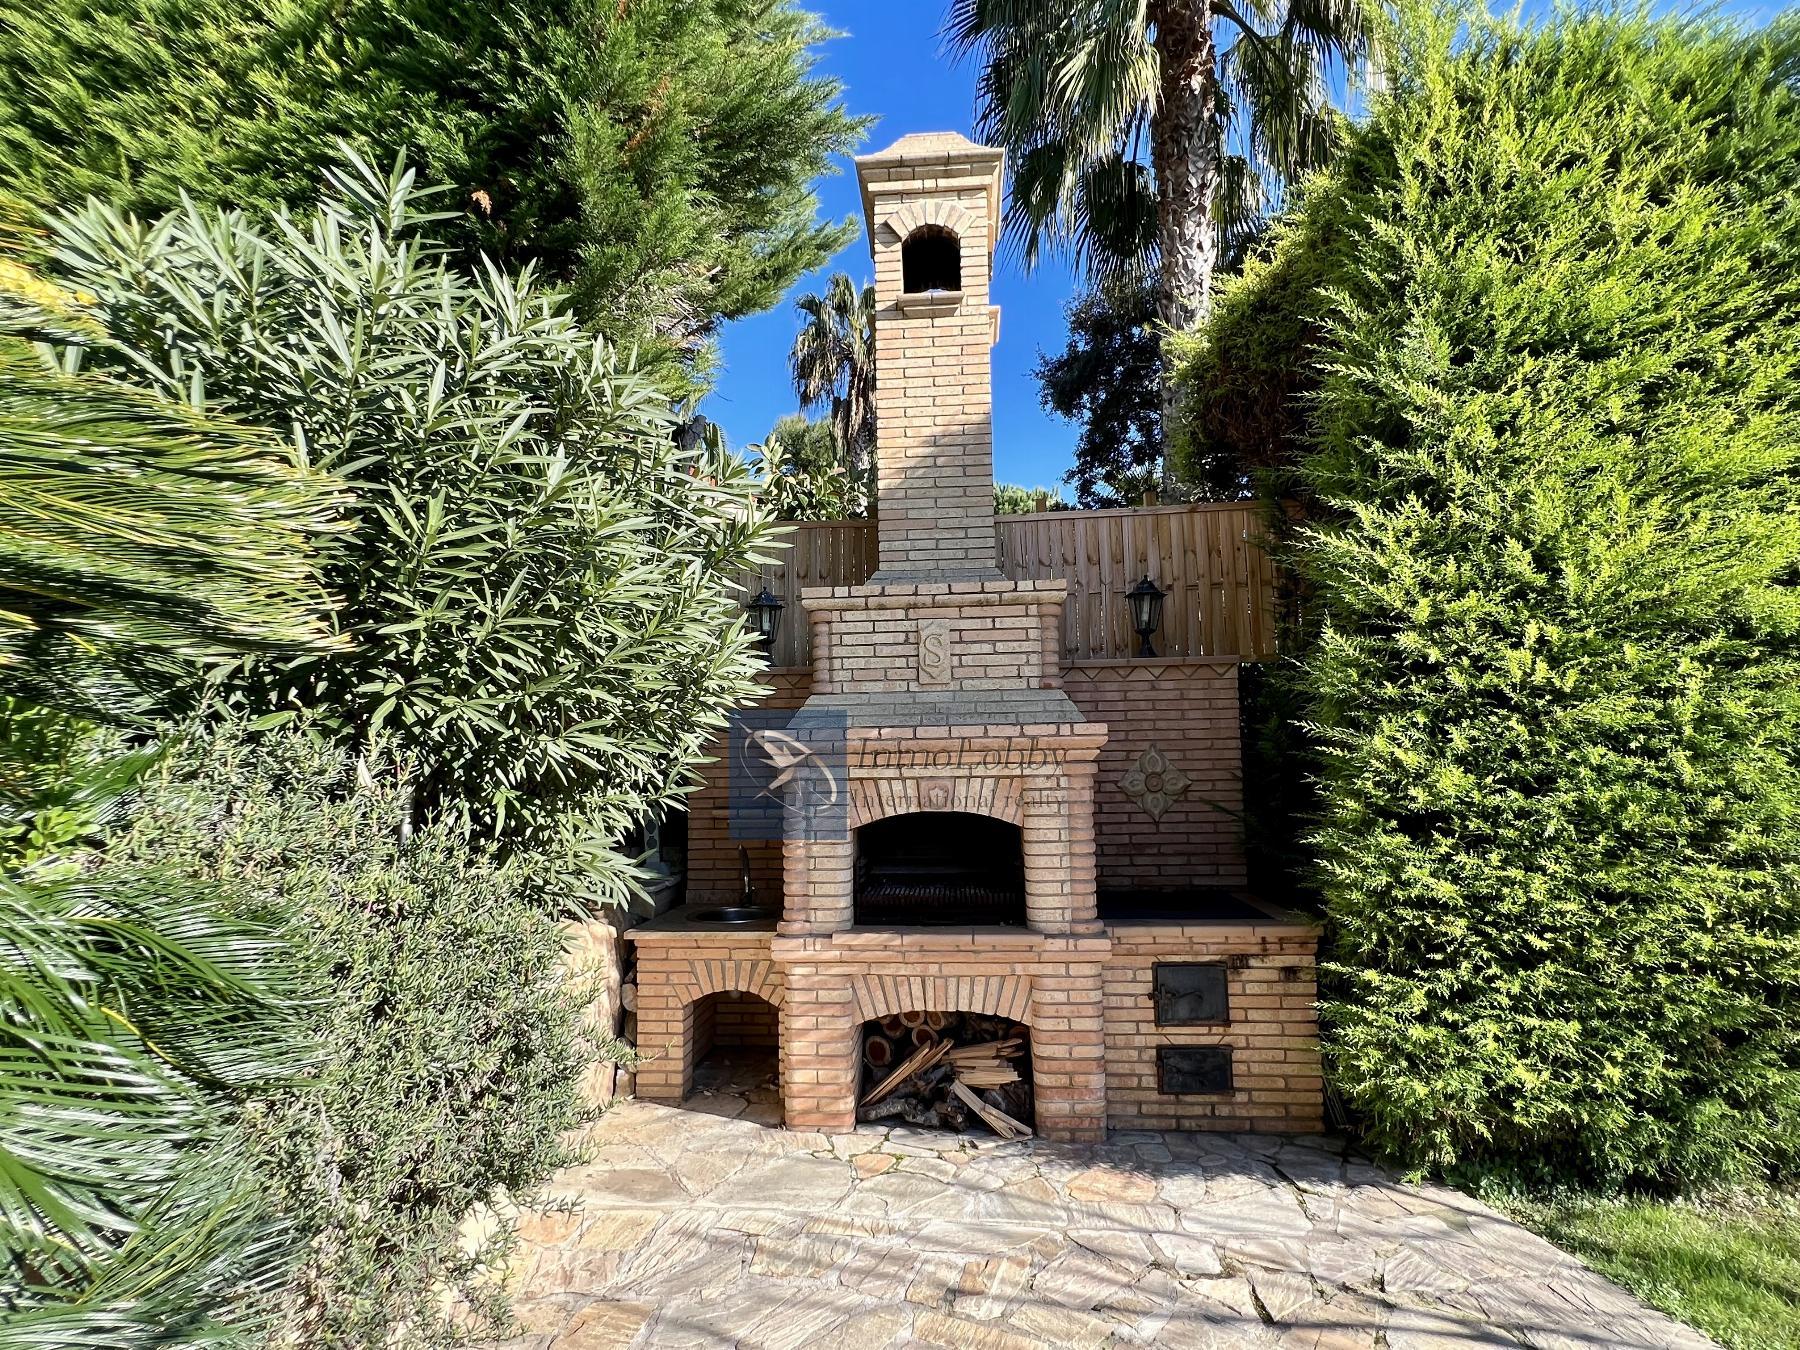 Vente de maison dans Sant Antoni de Calonge